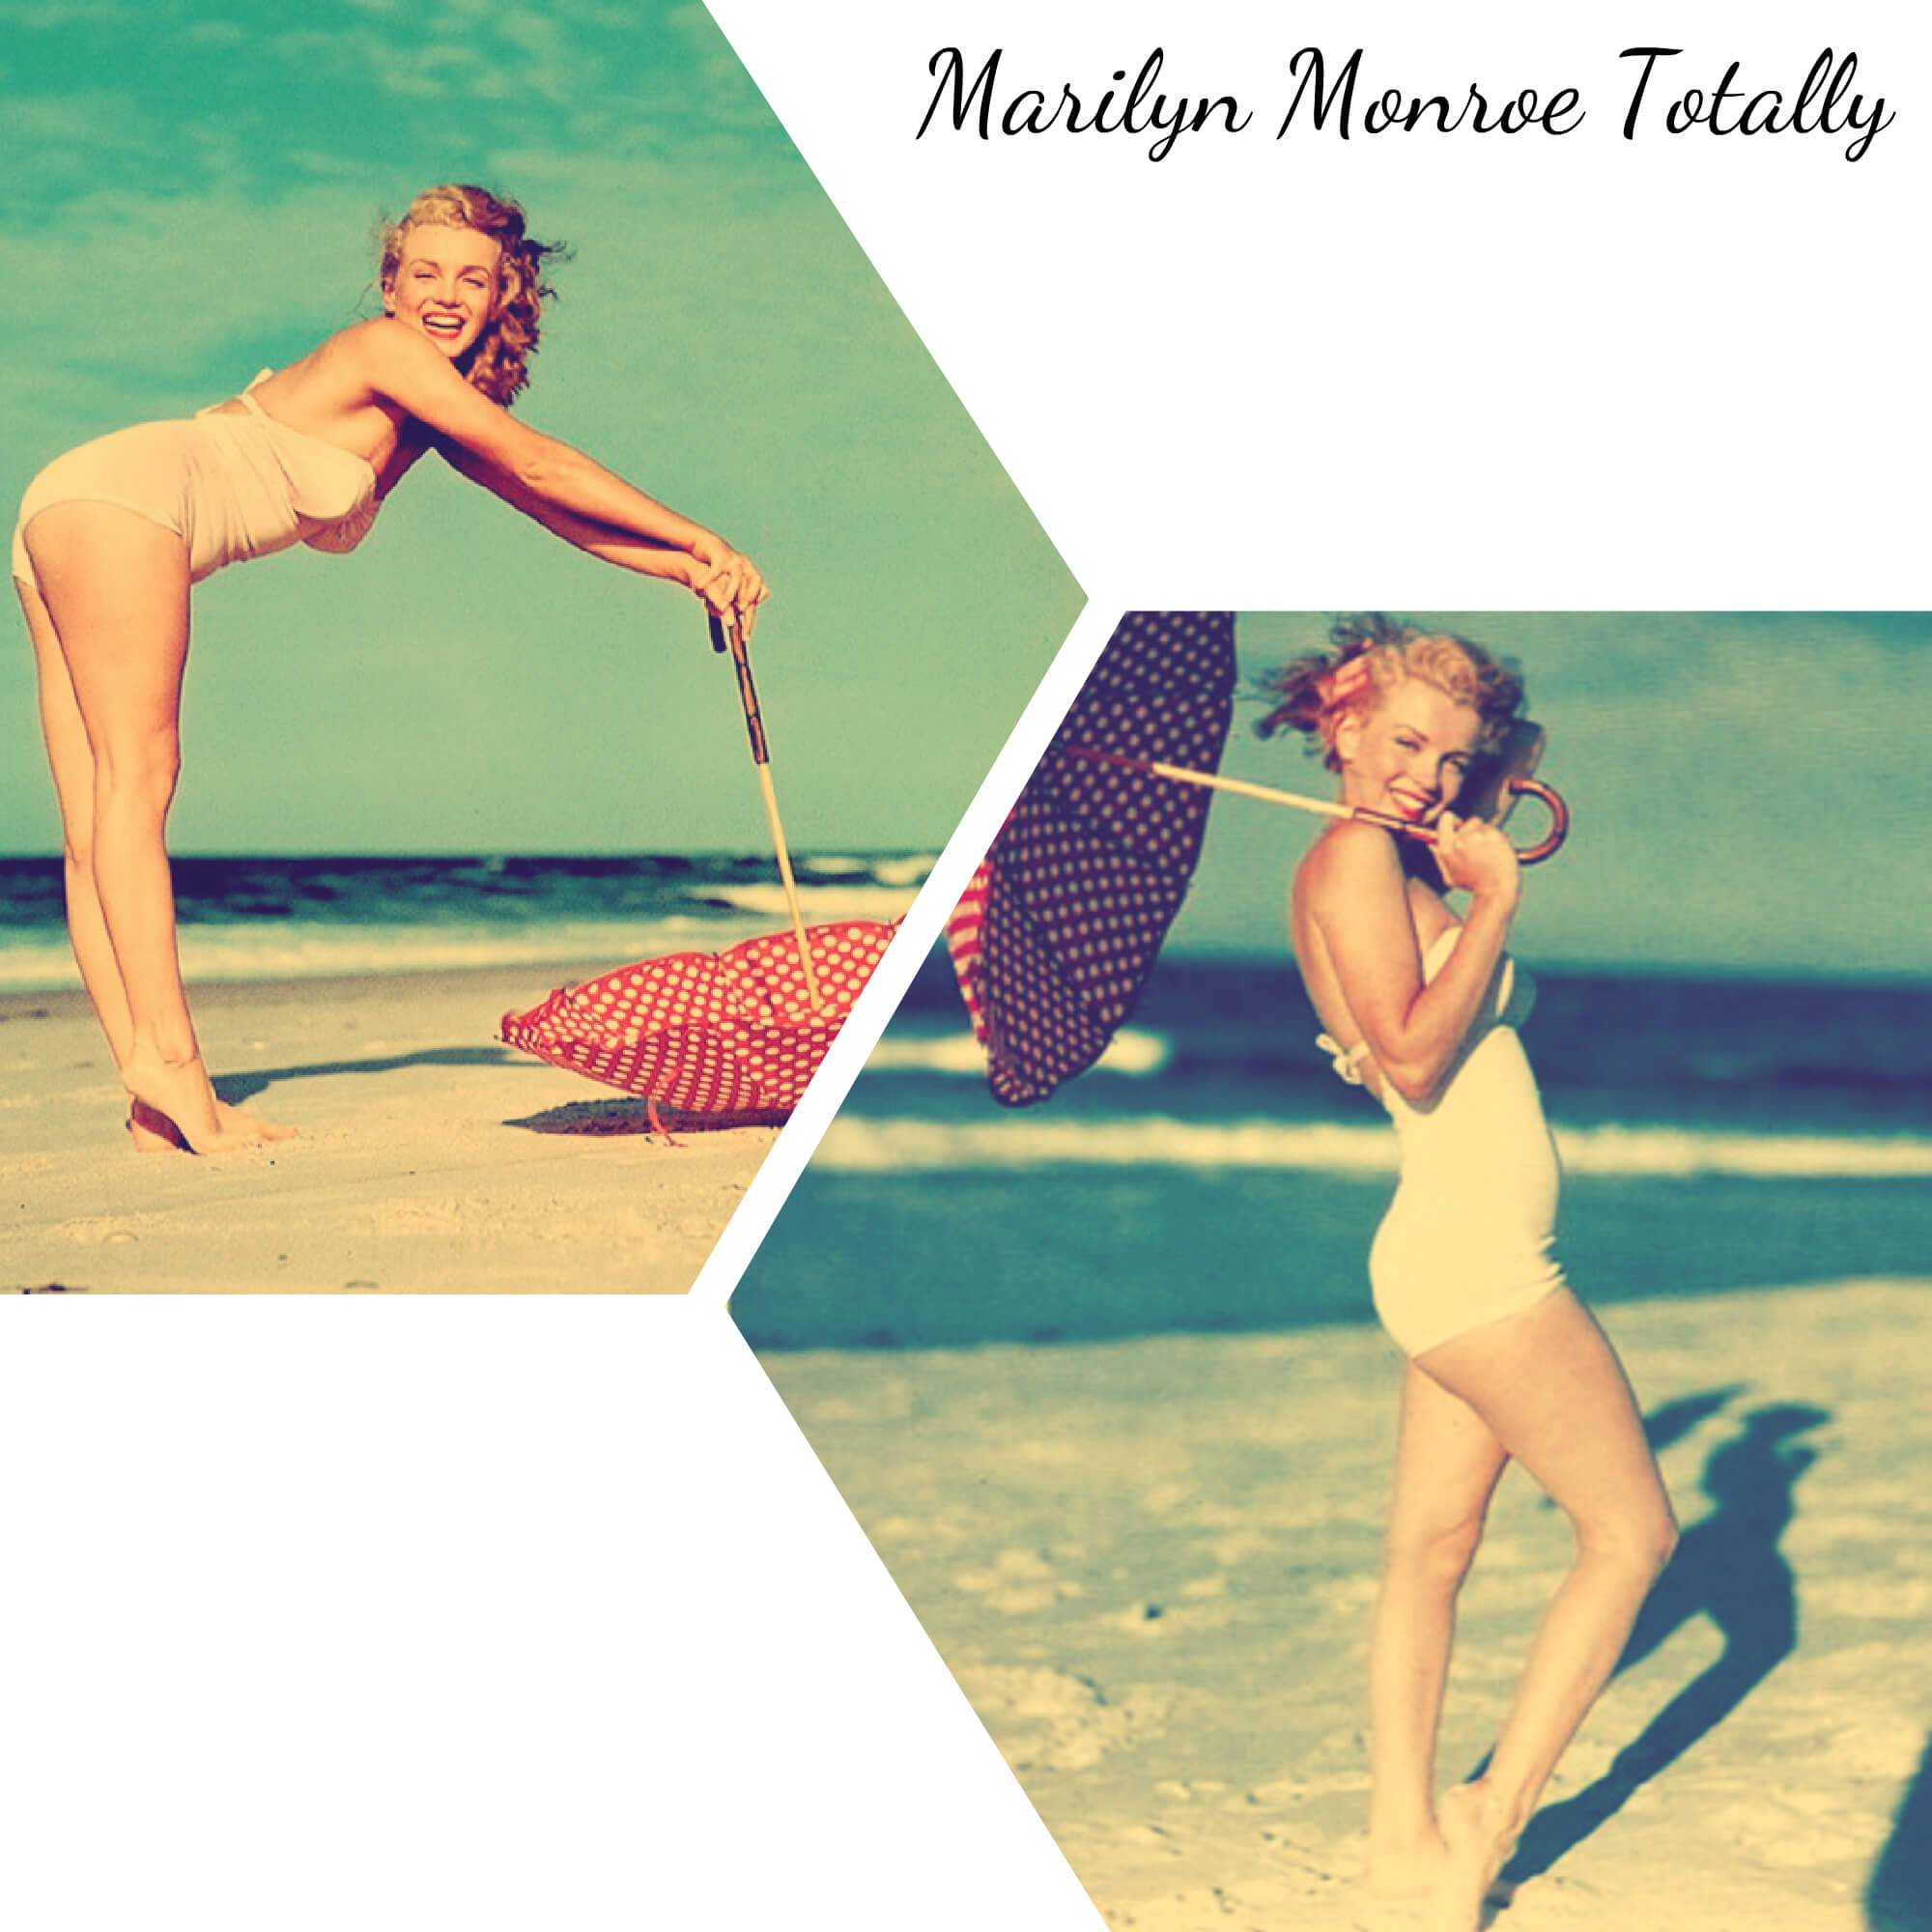 Икона стиля - Marilyn Monroe - в стиле Пин ап!